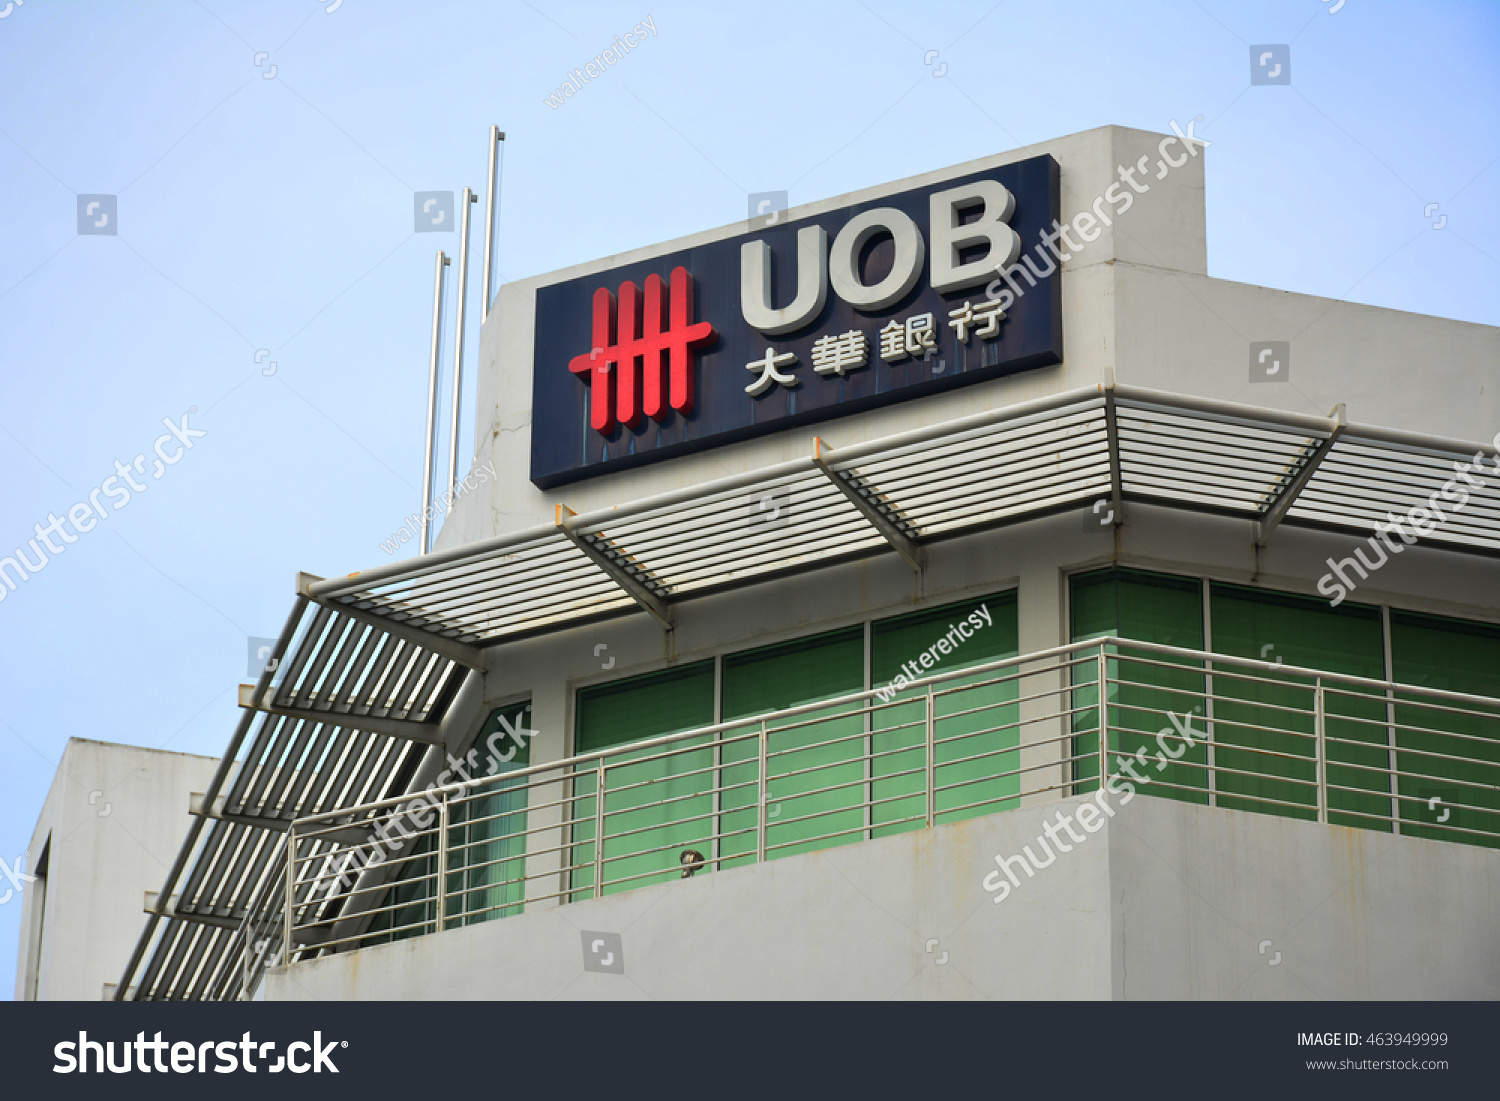 Uob forex rate malaysia